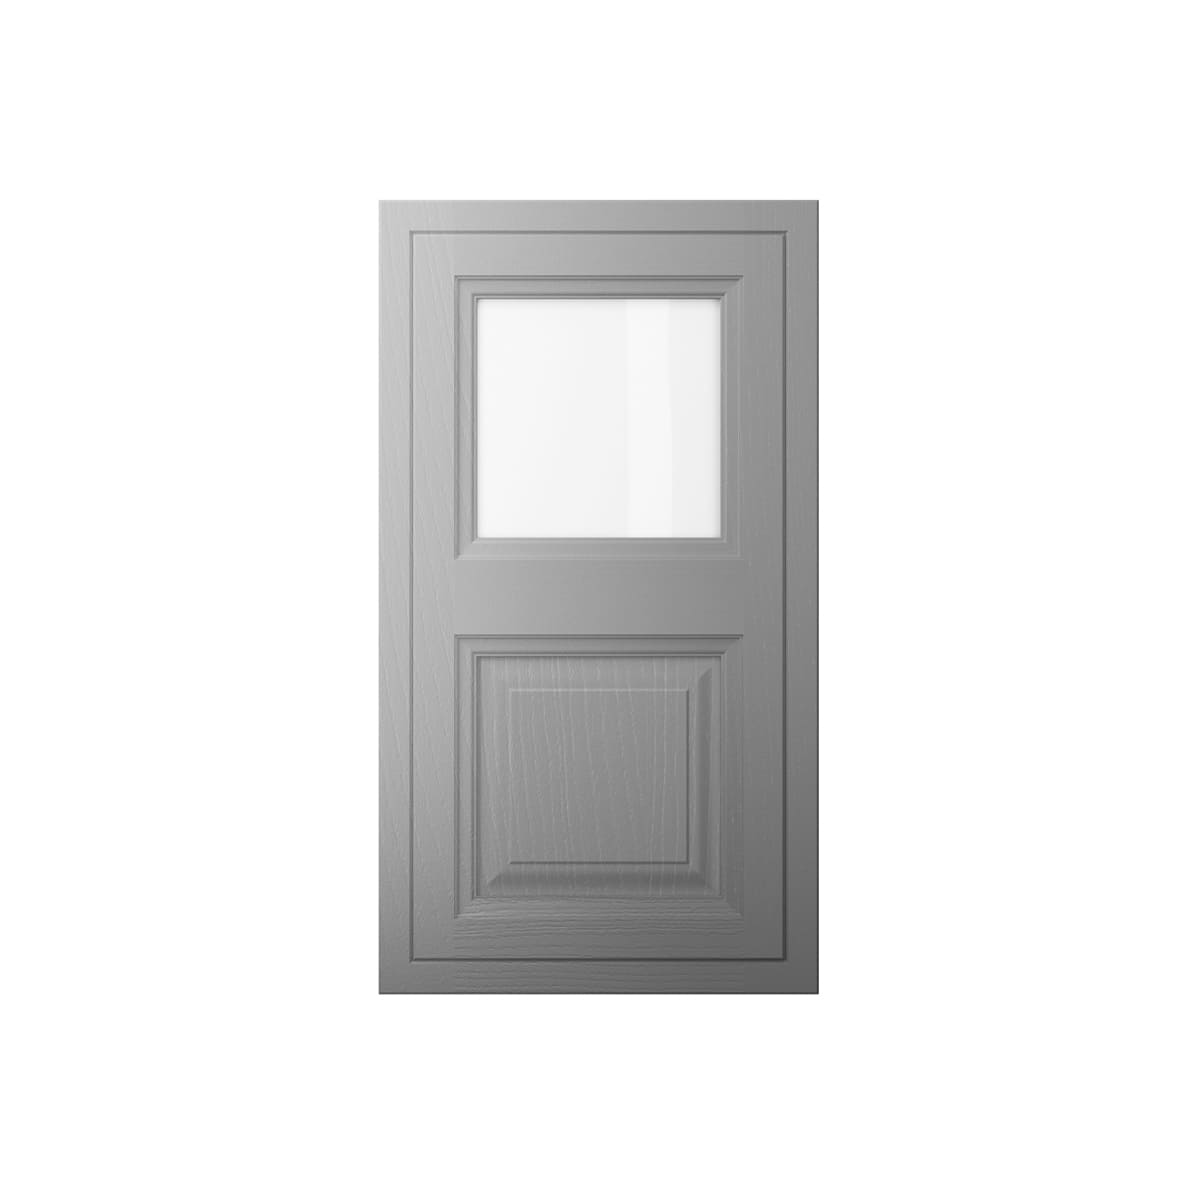 Single Glazed Door